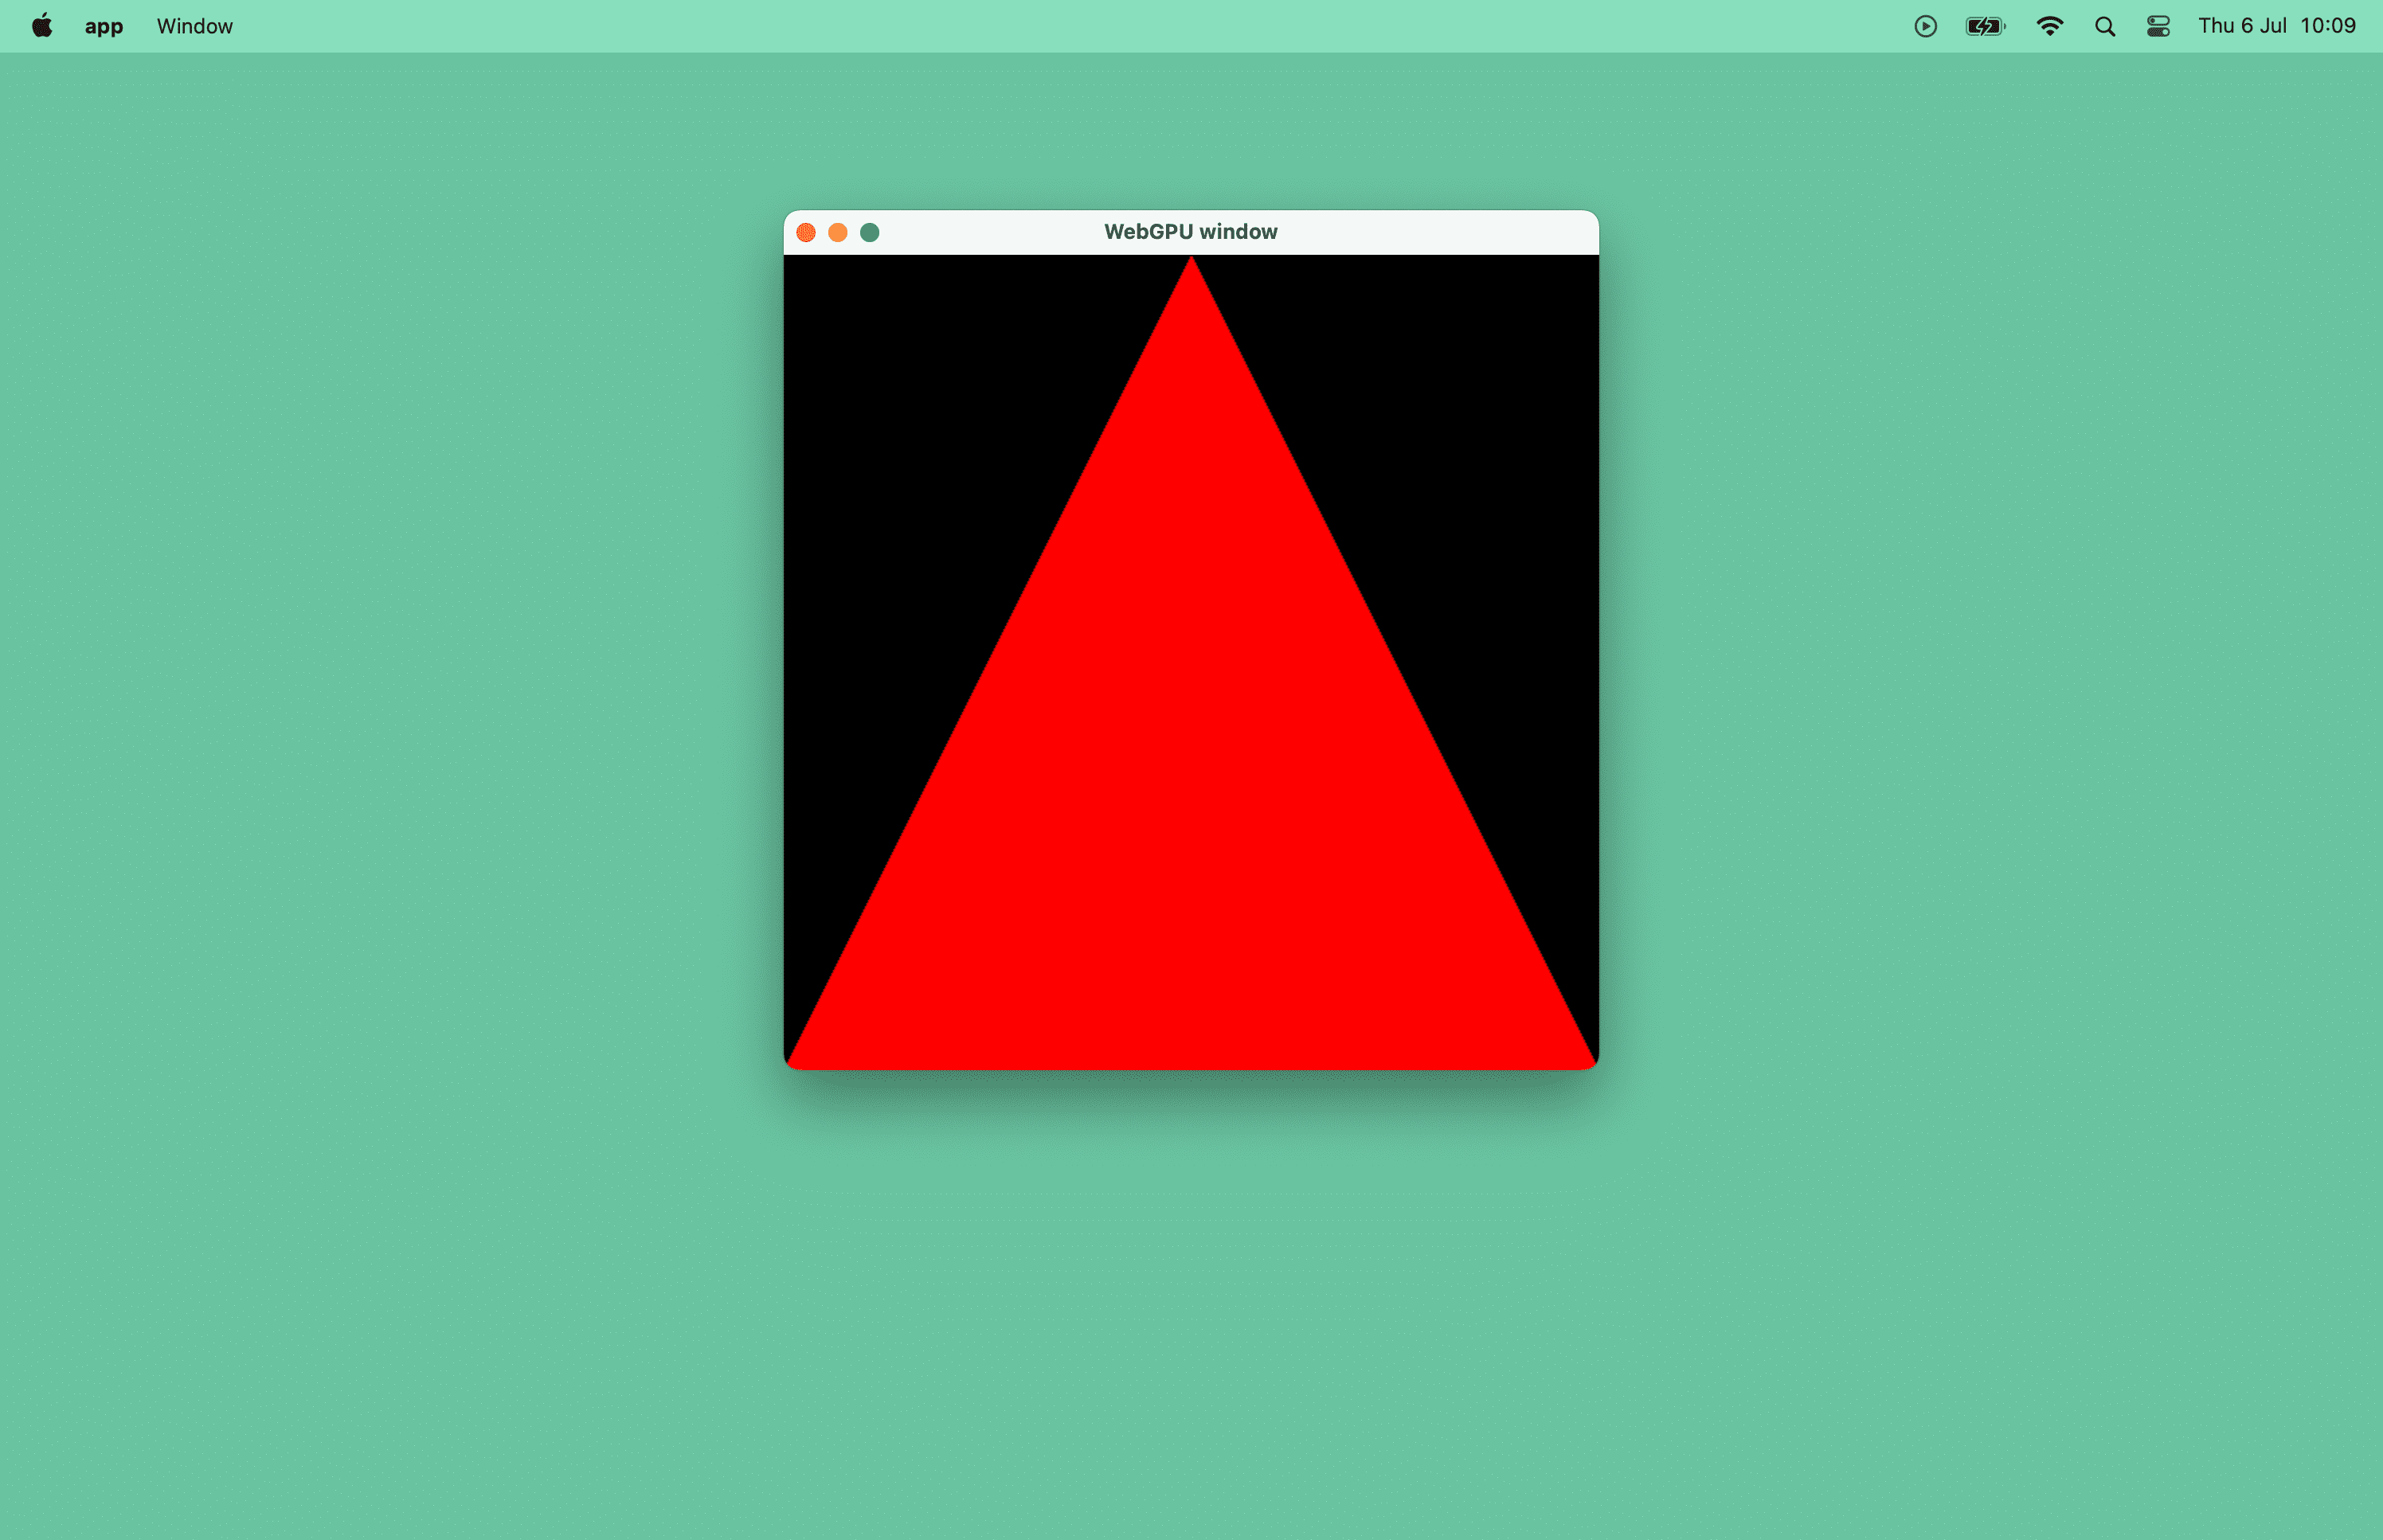 Captura de tela de um triângulo vermelho em uma janela do macOS.